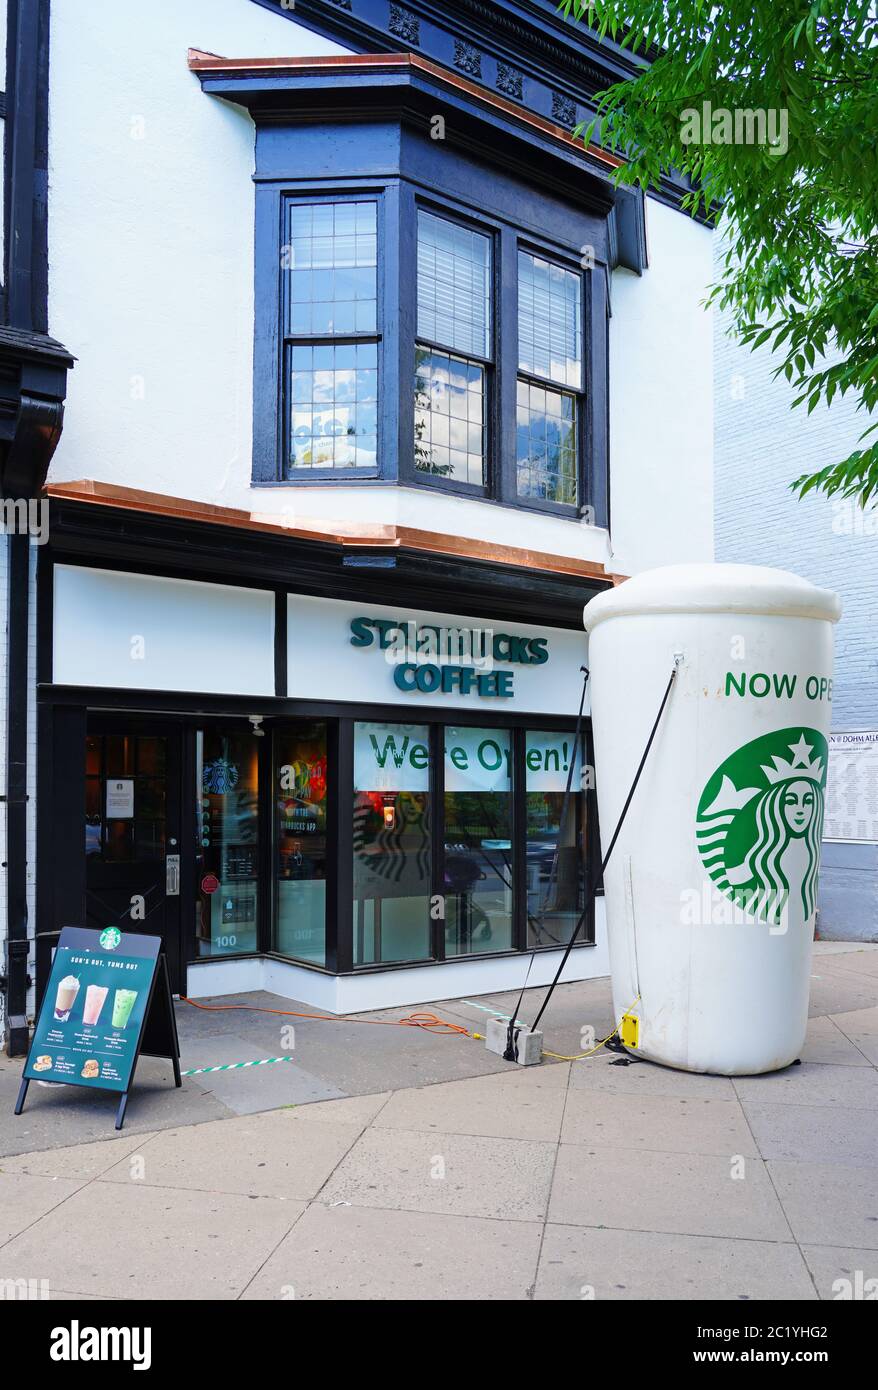 PRINCETON, New Jersey – 12. JUNI 2020 – Blick auf eine riesige Tasse Starbucks Coffee, die die Wiedereröffnung des Starbucks Stores in der Nassau Street in Princet signalisiert Stockfoto